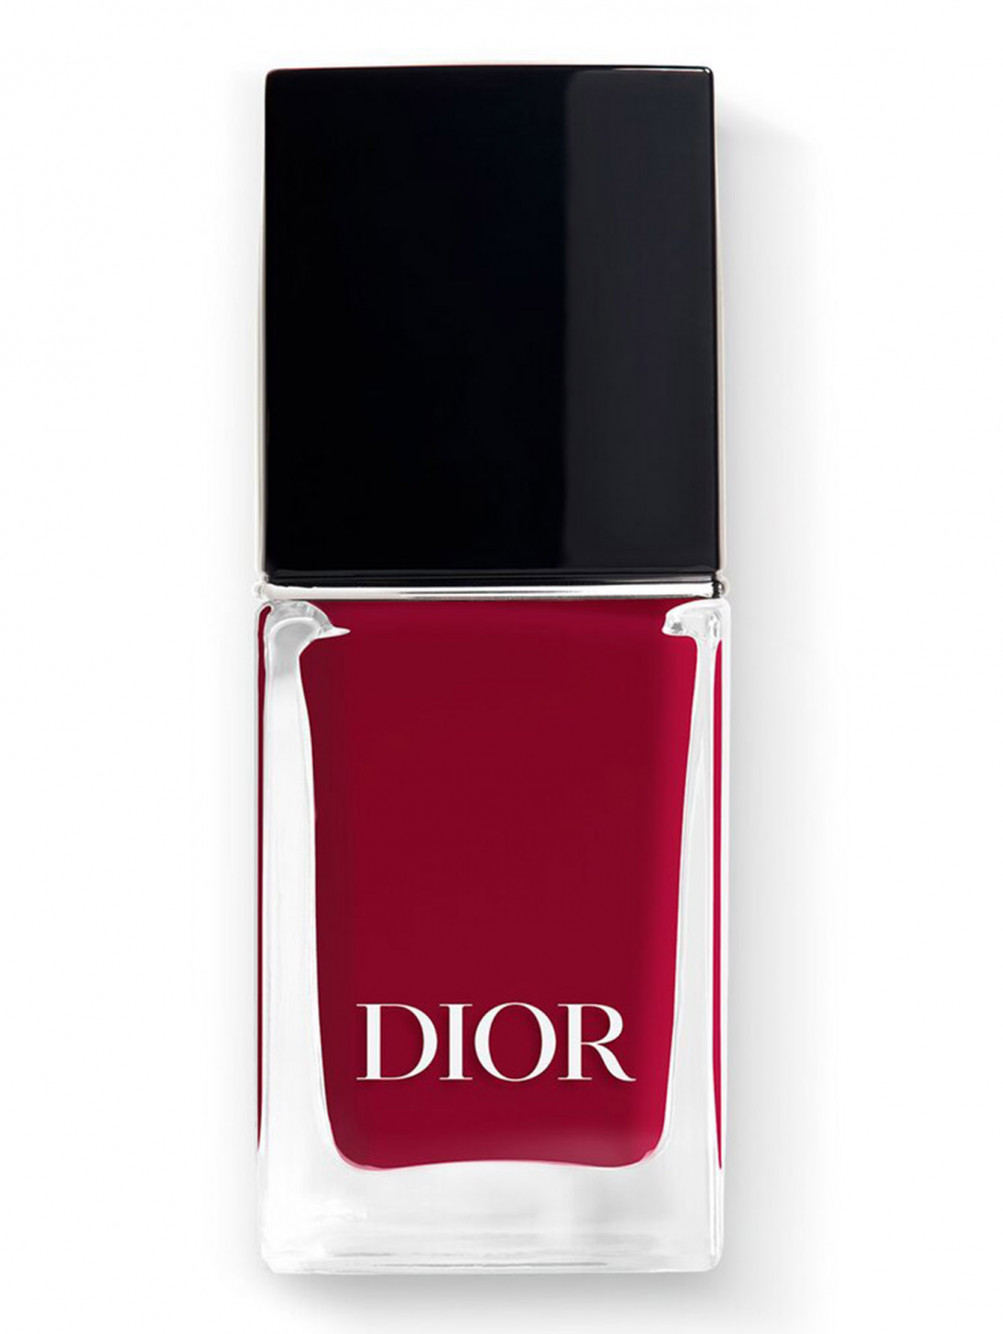 Лак для ногтей с эффектом гелевого покрытия Dior Vernis, 853 Красный Трафальгар, 10 мл - Общий вид